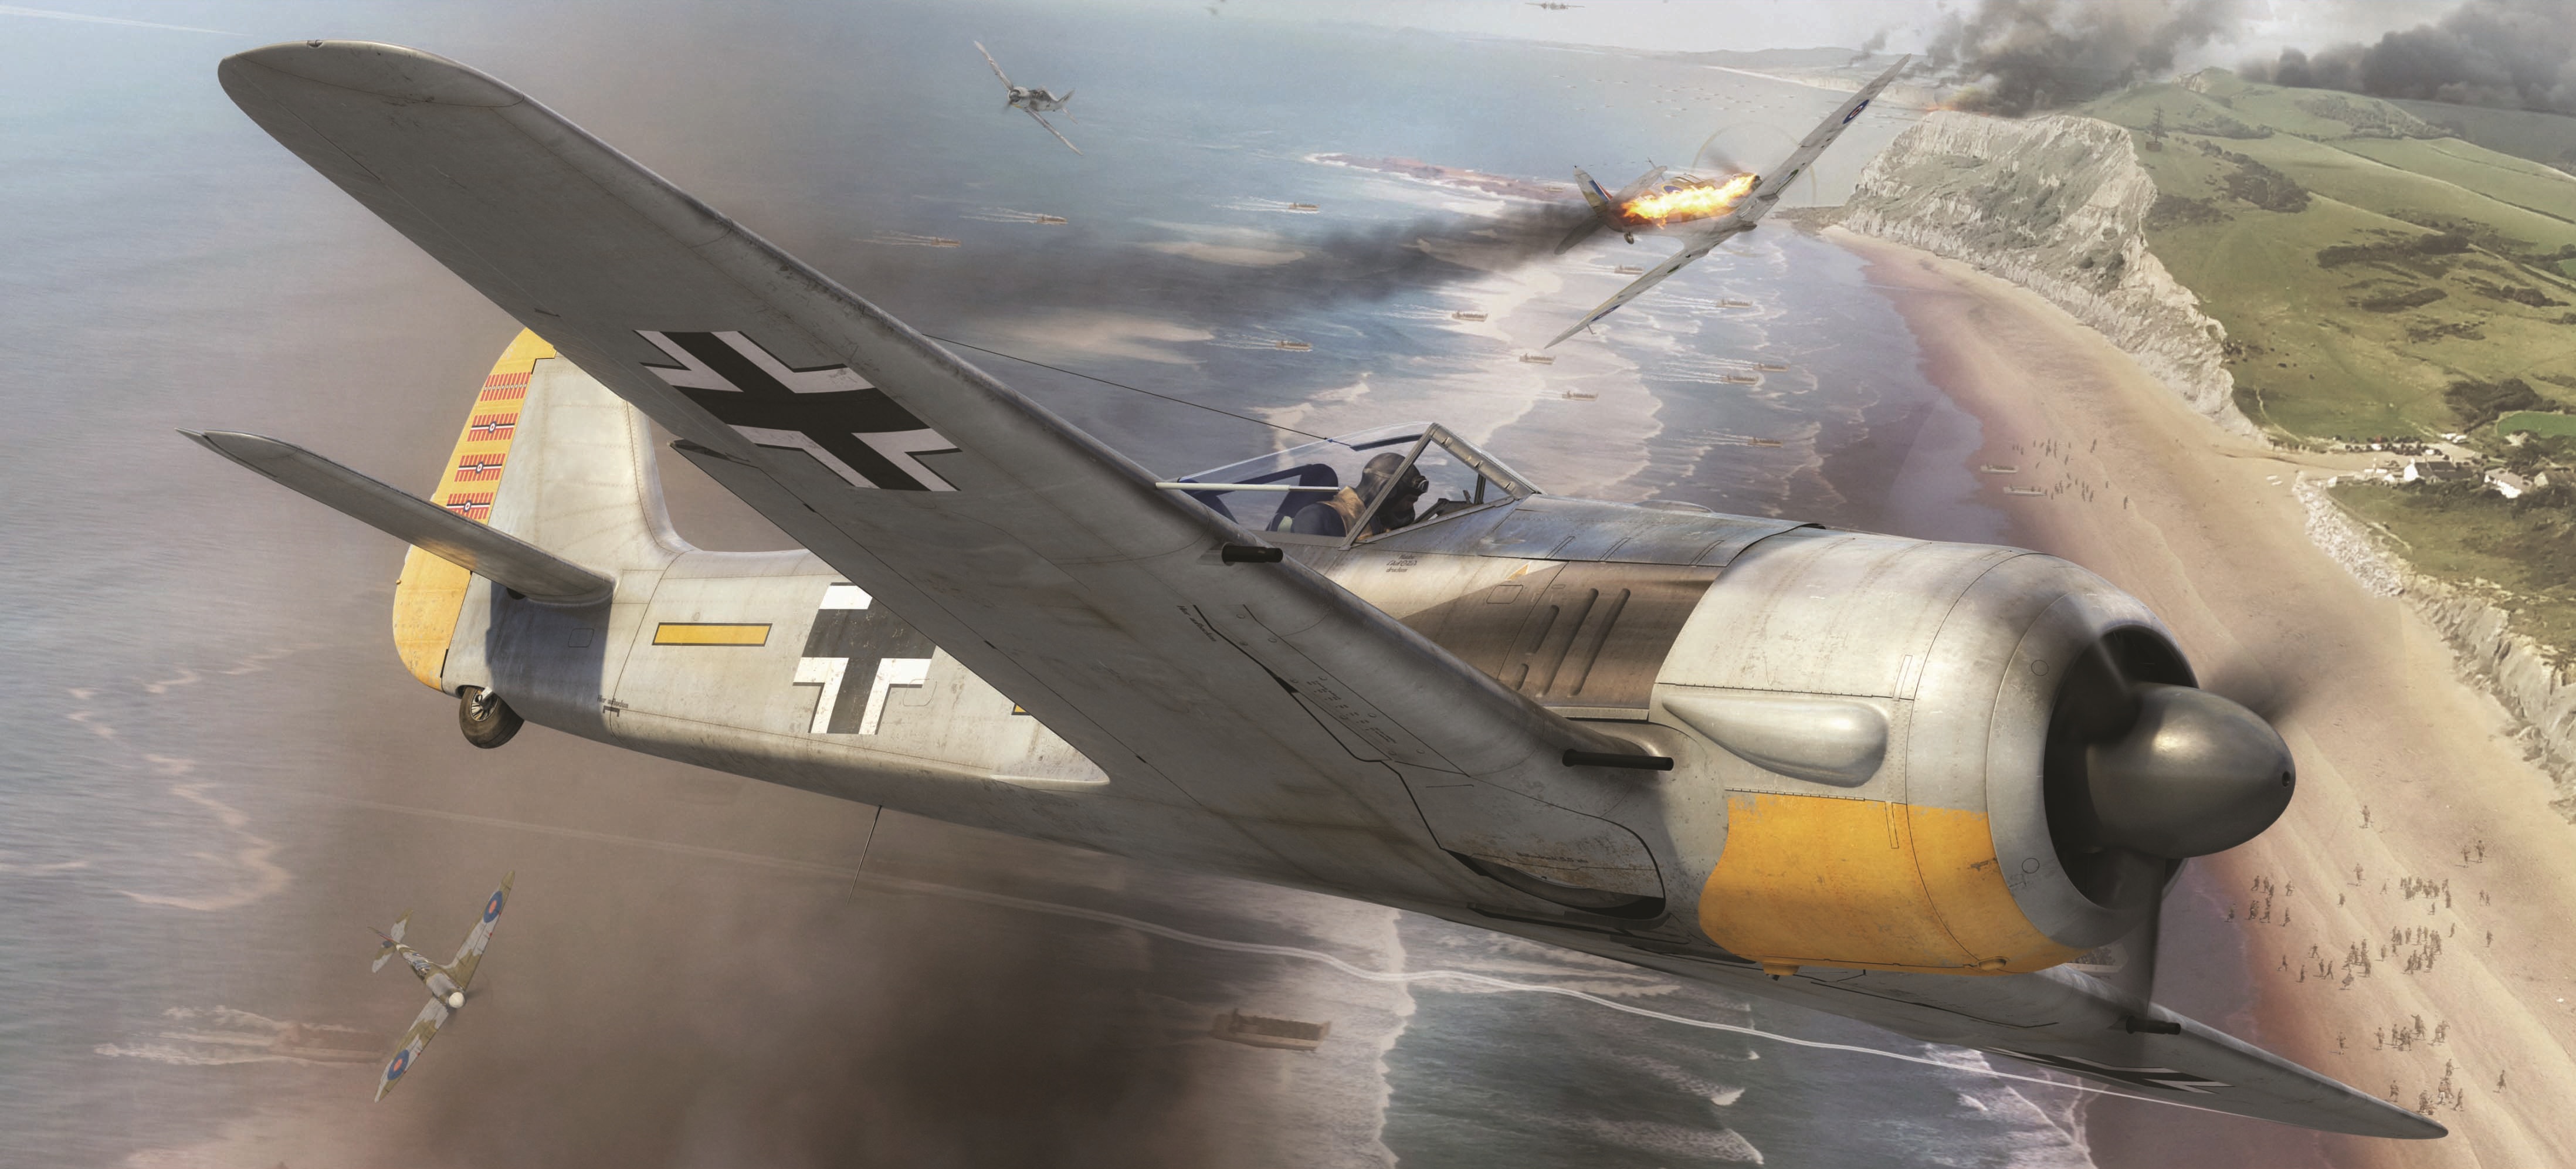 General 4392x1993 World War II Focke-Wulf Focke-Wulf Fw 190 airplane war aircraft military German aircraft Luftwaffe